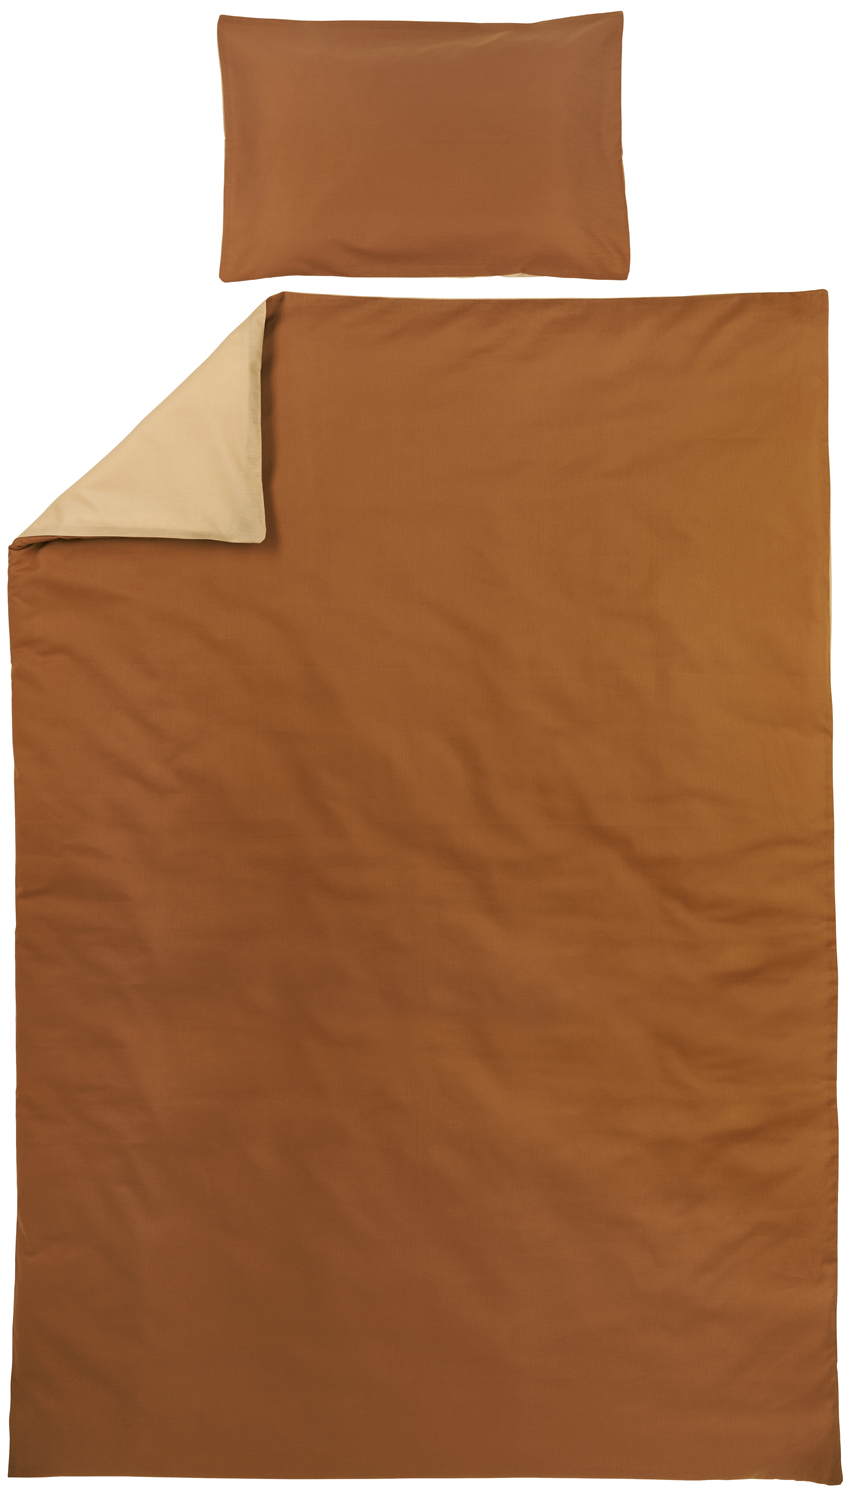 Duvet cover 1-Pers. Uni - camel/warm sand - 140x200/220cm